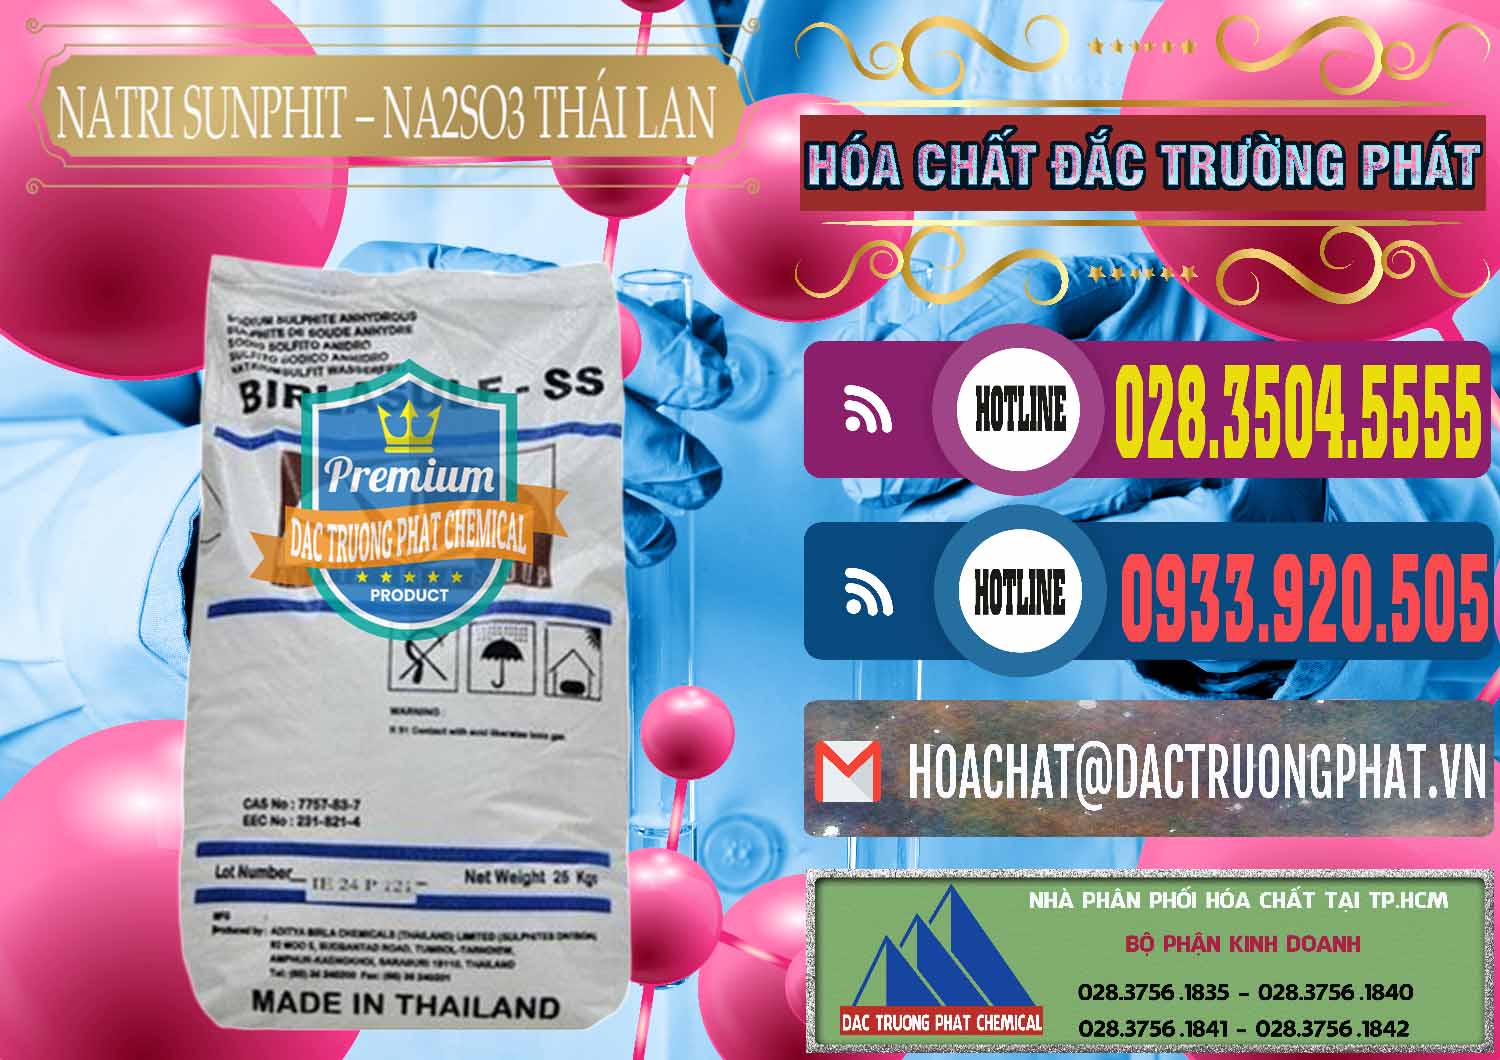 Cty chuyên bán & phân phối Natri Sunphit - NA2SO3 Thái Lan - 0105 - Công ty cung cấp và nhập khẩu hóa chất tại TP.HCM - muabanhoachat.com.vn